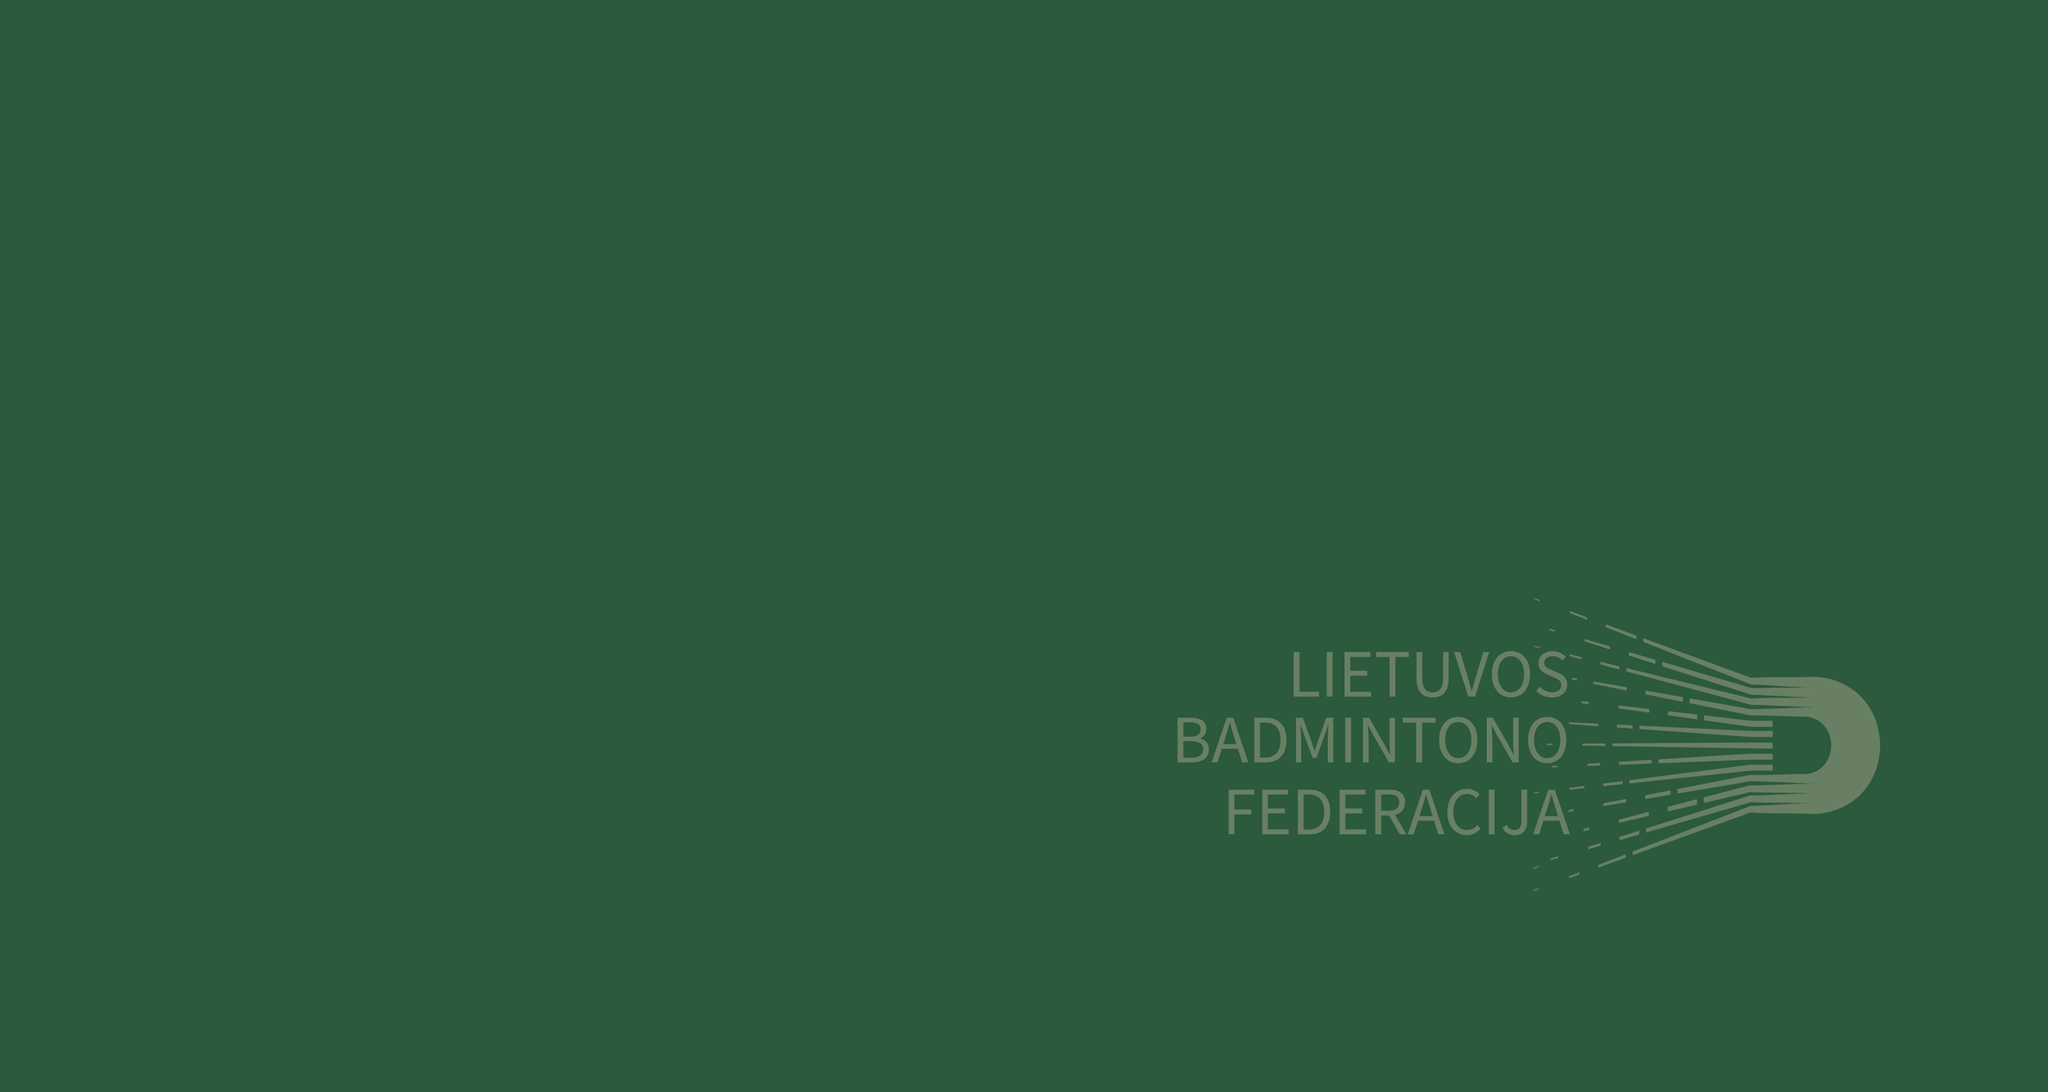 Lietuvos-badmintono-federacija-1.png